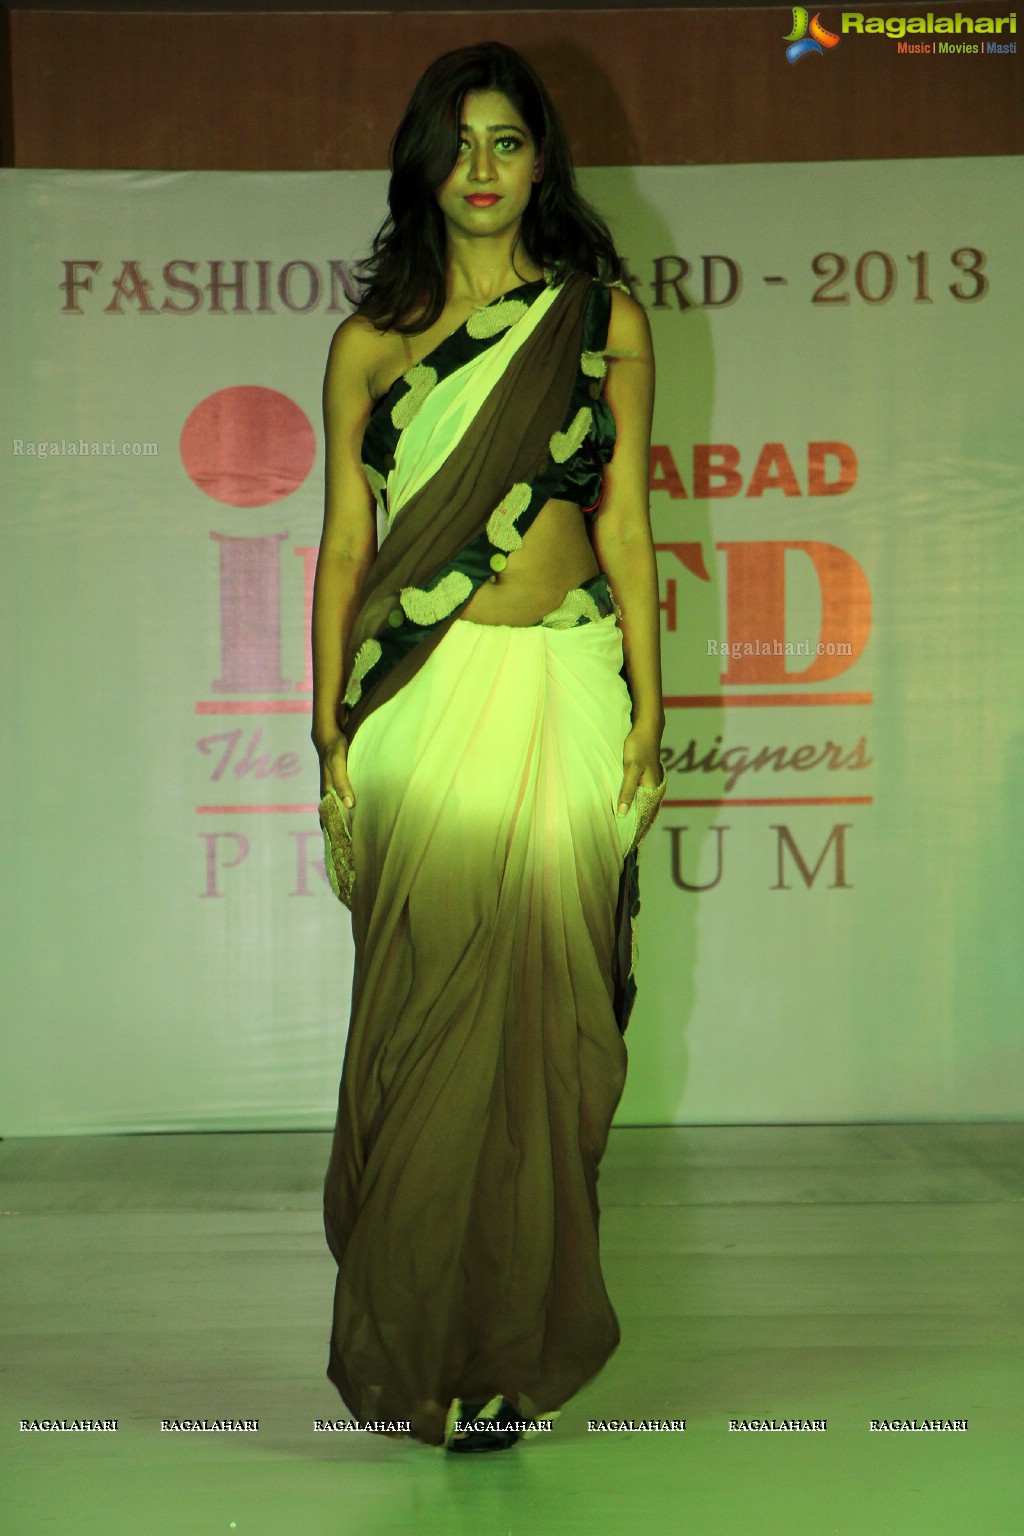 INIFD Fashion Forward 2013